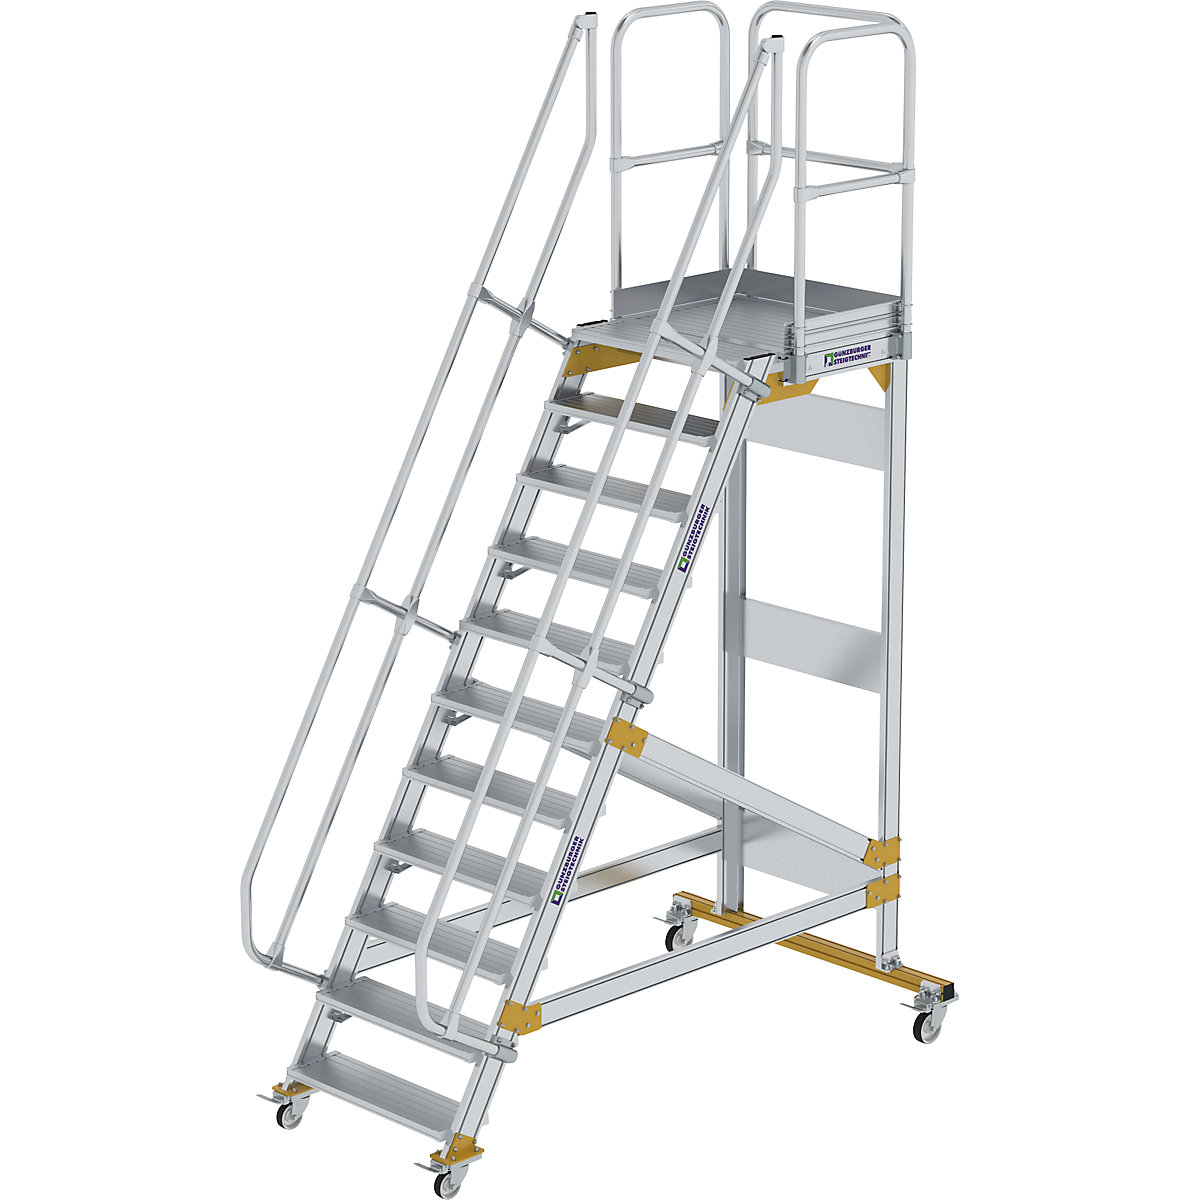 PROTECTION DE BORD d'escalier de qualité supérieure pour une sécurité  accrue EUR 24,16 - PicClick FR